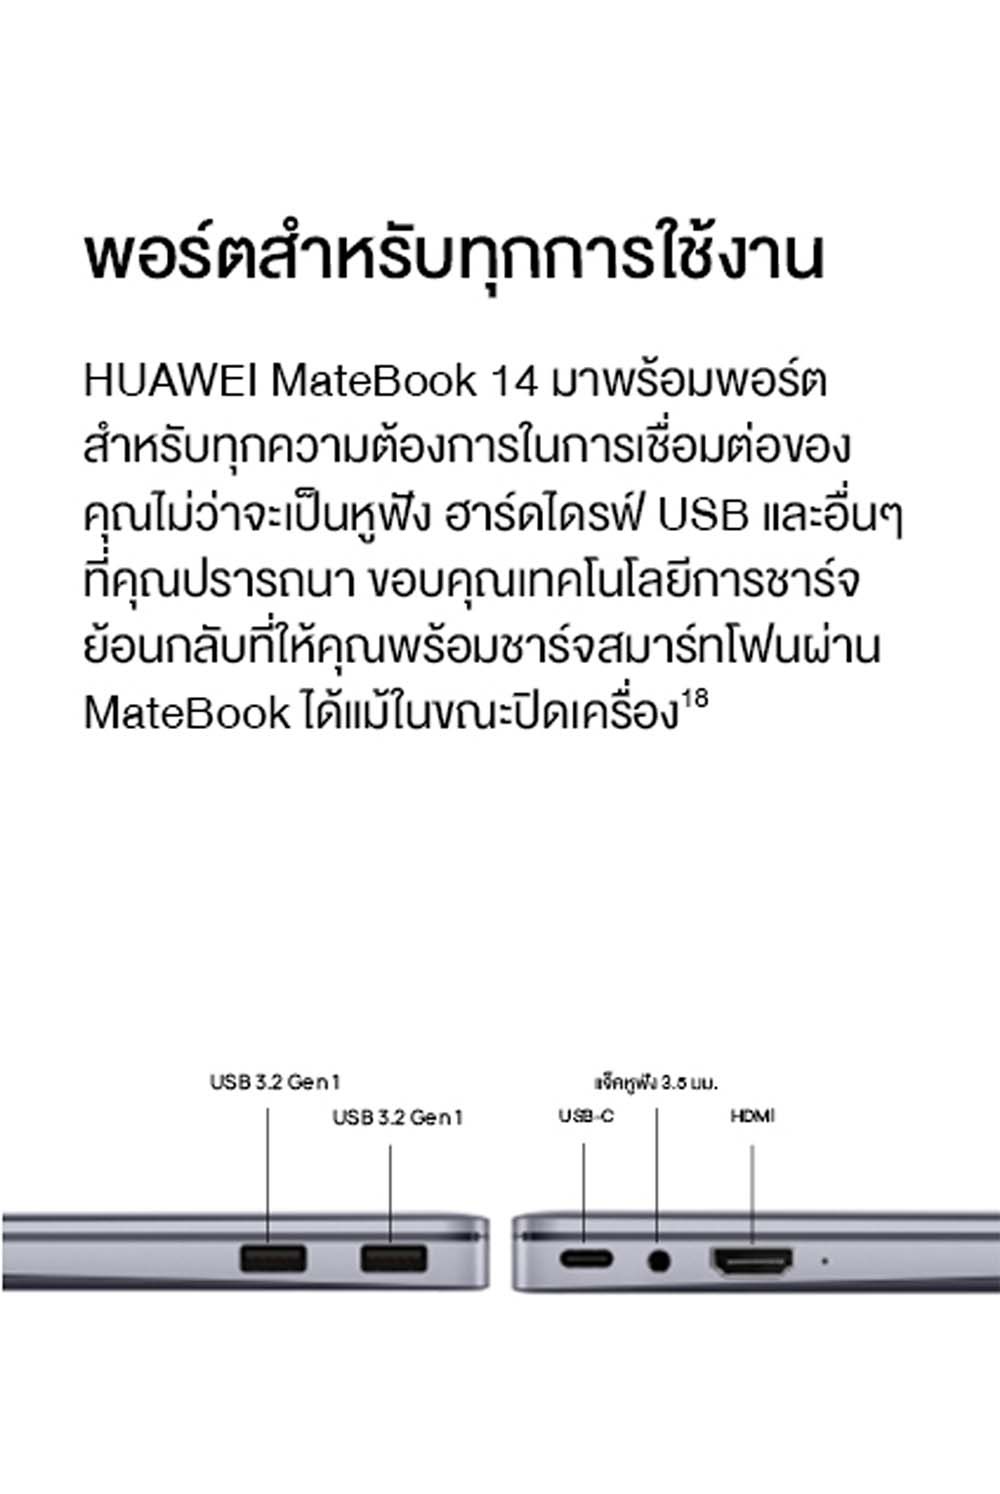 ภาพประกอบคำอธิบาย HUAWEI MateBook 14 11th Gen Intel Core i5-1135G7 Processor แล็ปท็อป Intel Iris Xe Graphics 16GB DDR4 3200 MHz 14 น